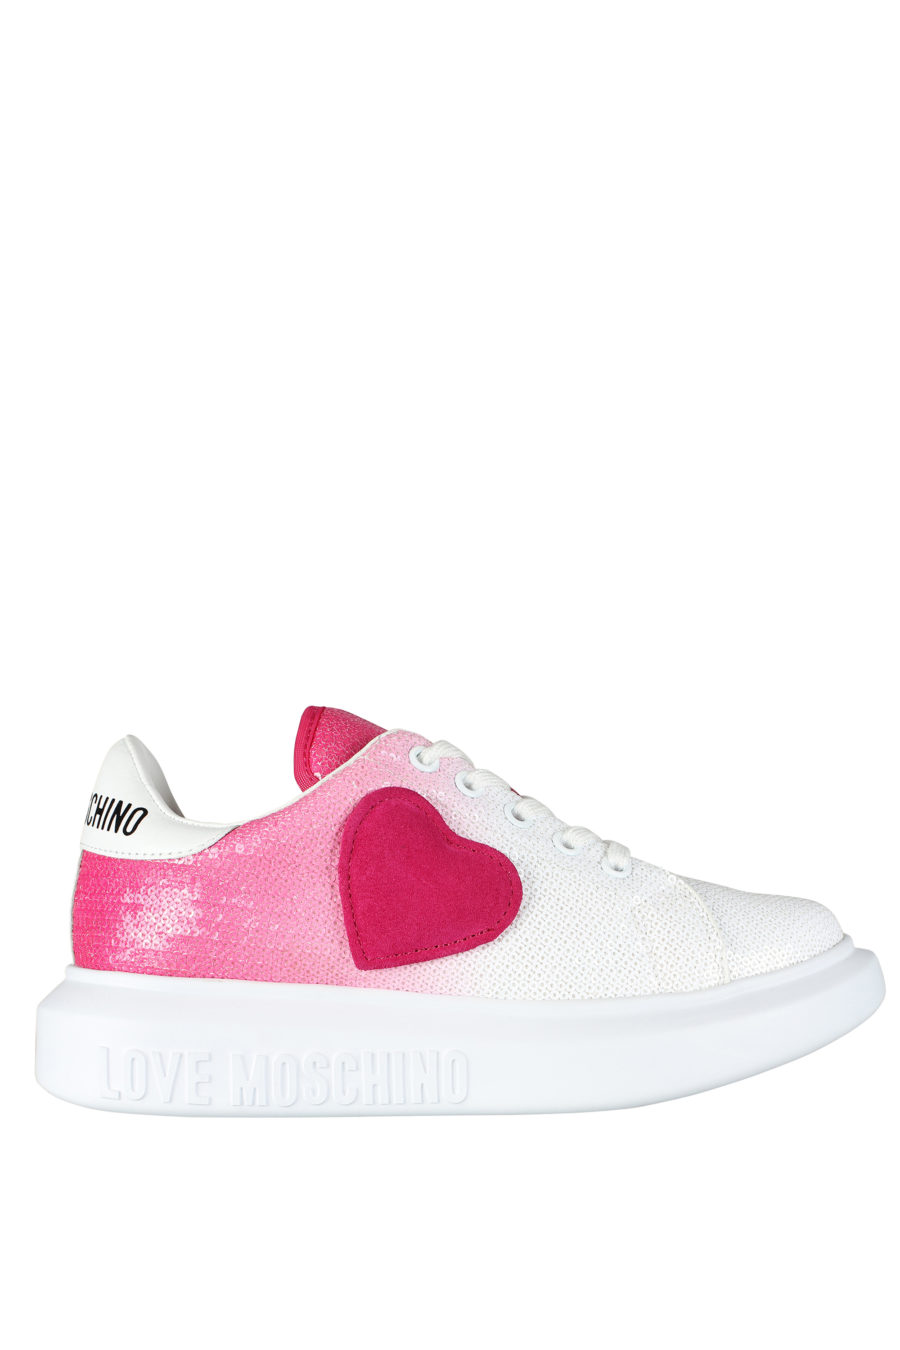 Zapatillas blancas con degrade rosa y lentejuelas - IMG 5261